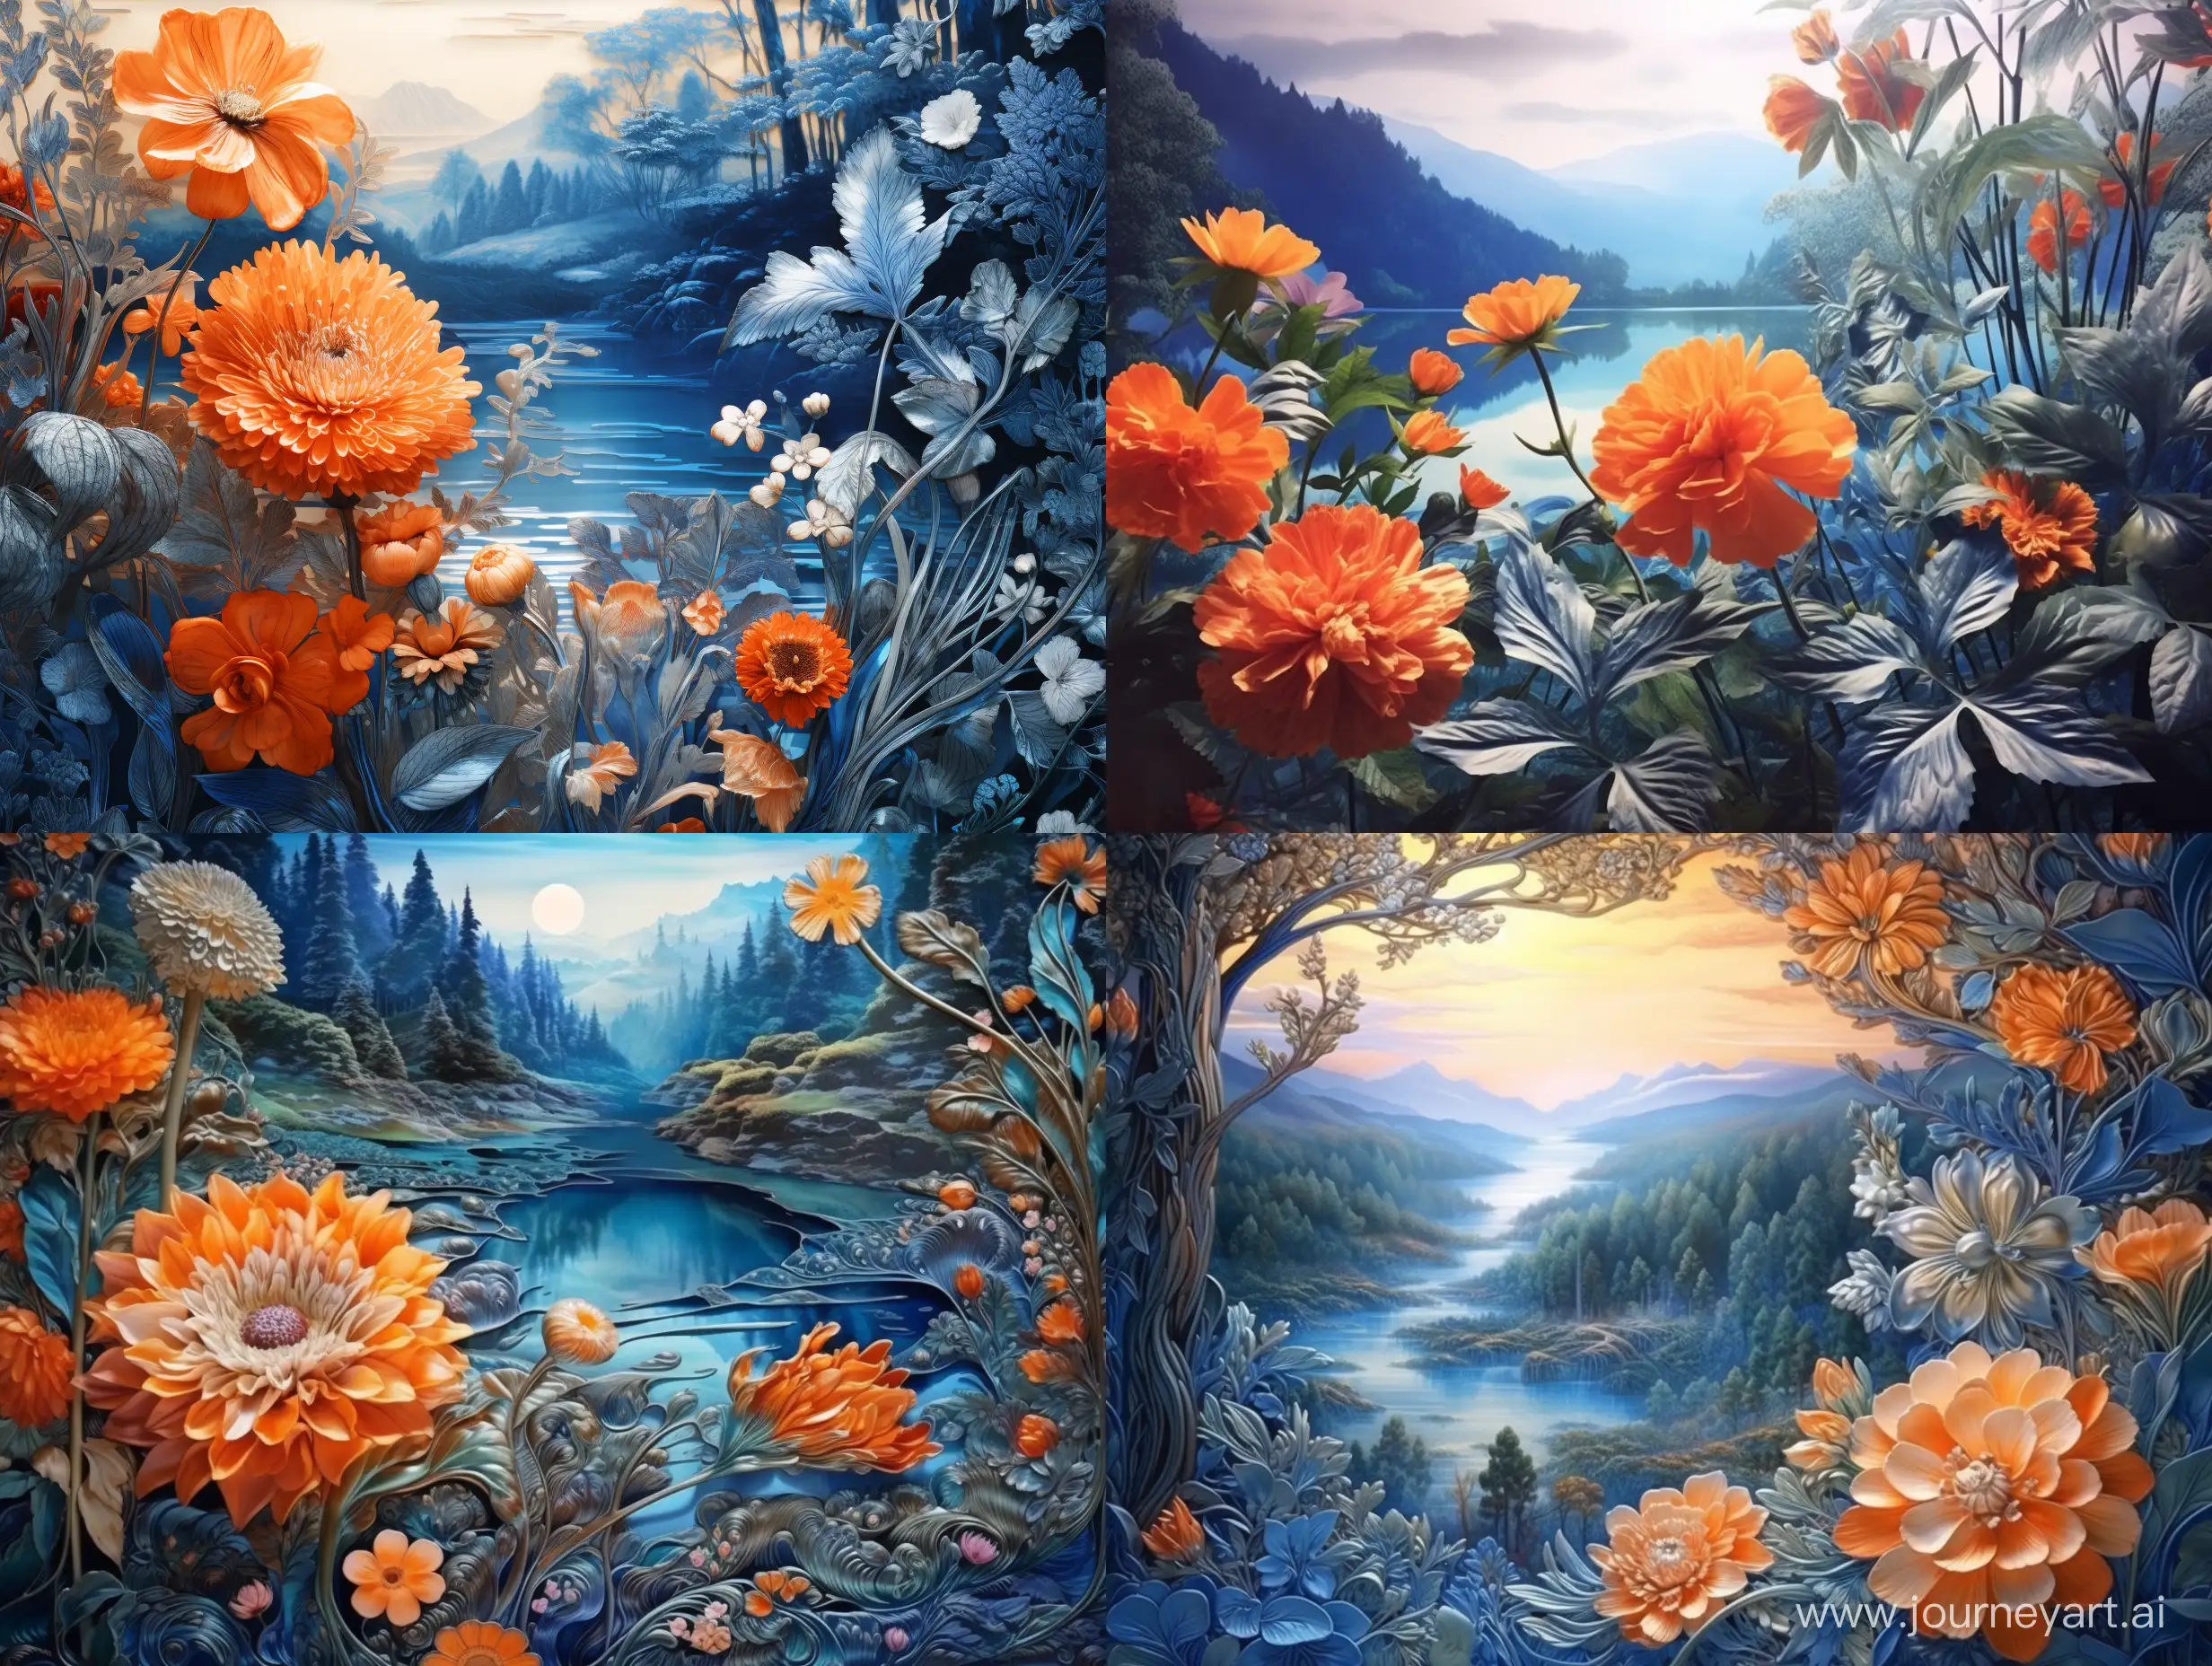 Оранжево синяя палитра. Синий лес, синие горы, оранжевое солнце, оранжевая радуга, оранжевые цветы, синяя река с отражением. Фотореализм, гипердетализация, эстетично, красиво, филигранно.